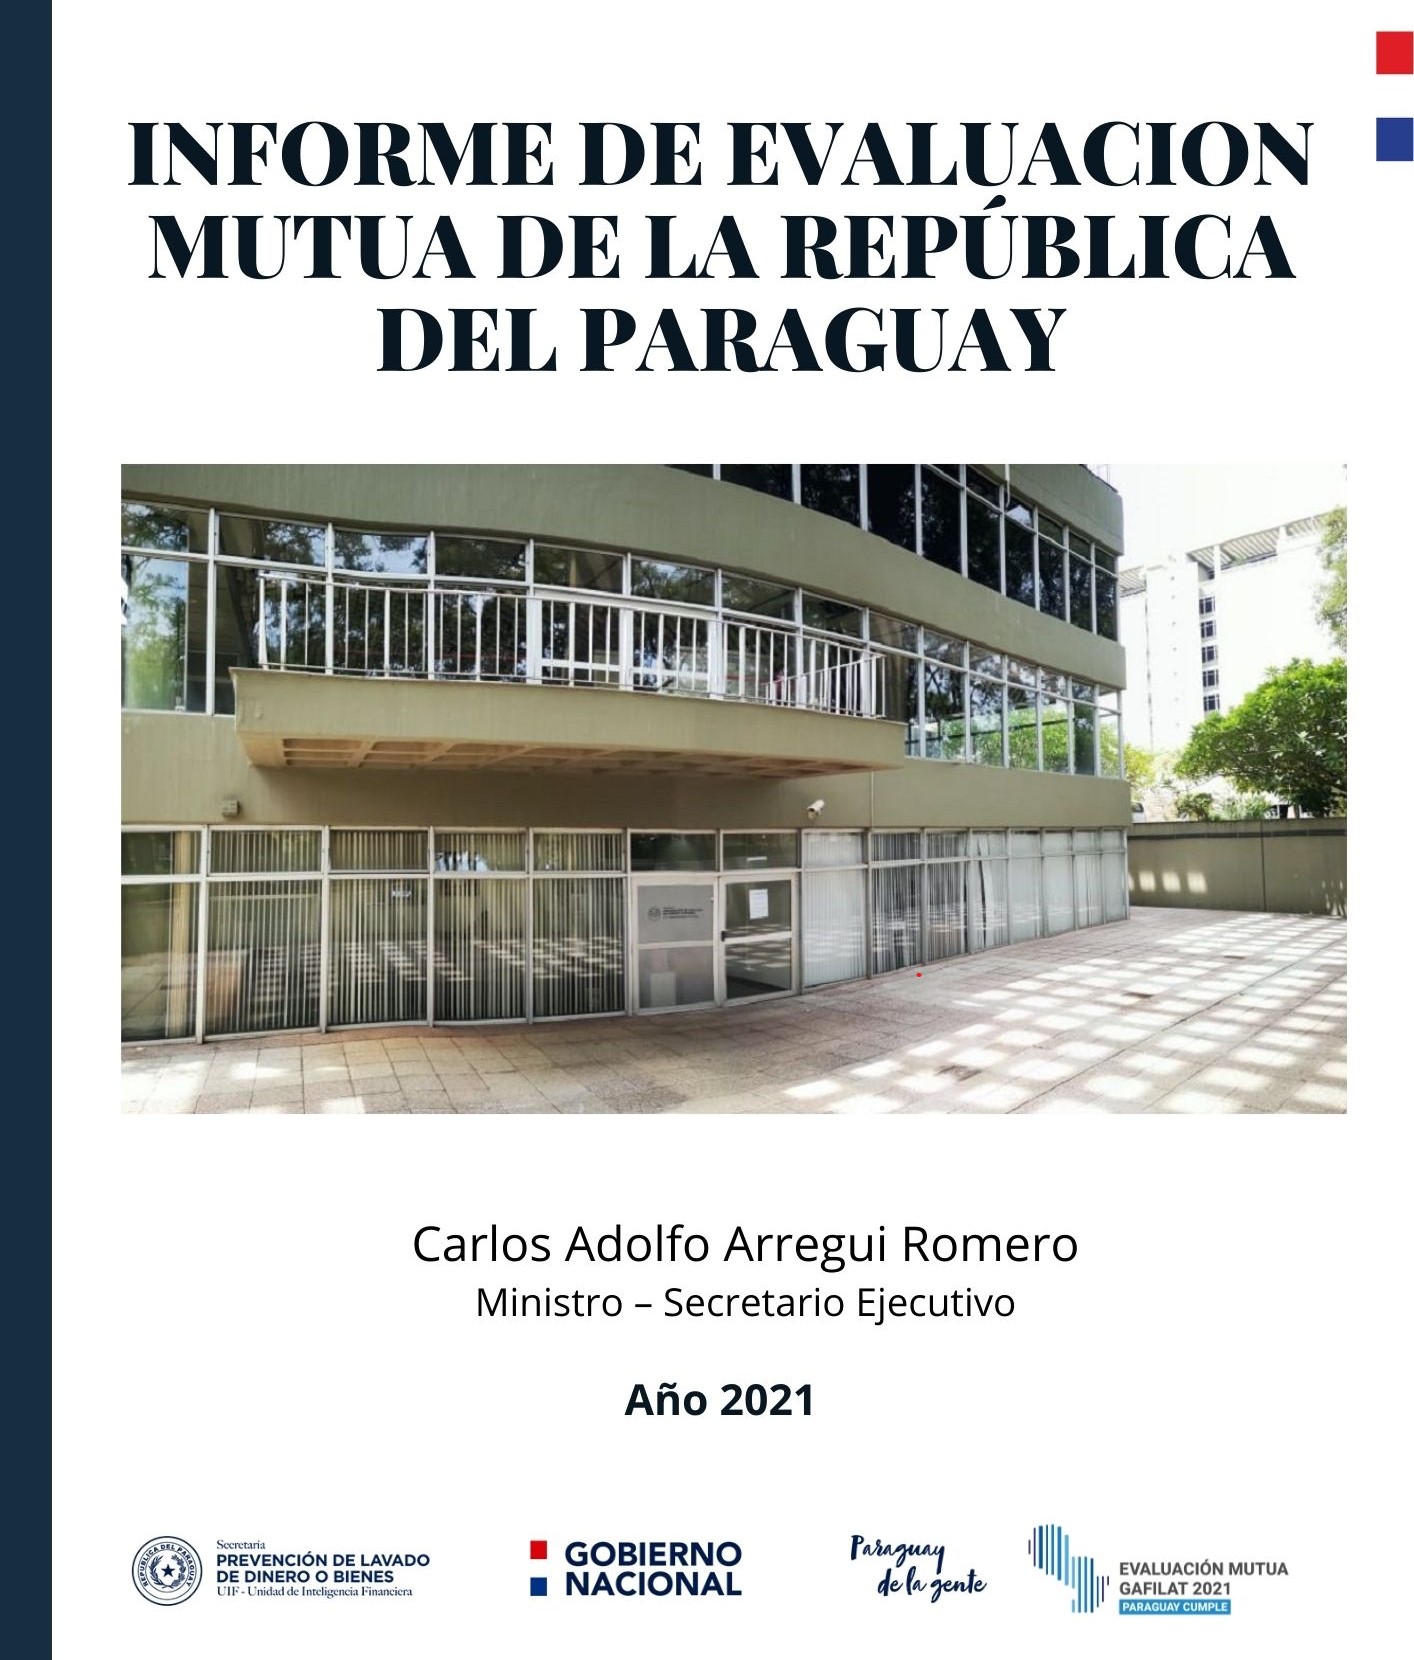 Paraguay remitió el segundo descargo de las observaciones realizadas por los evaluadores del GAFILAT